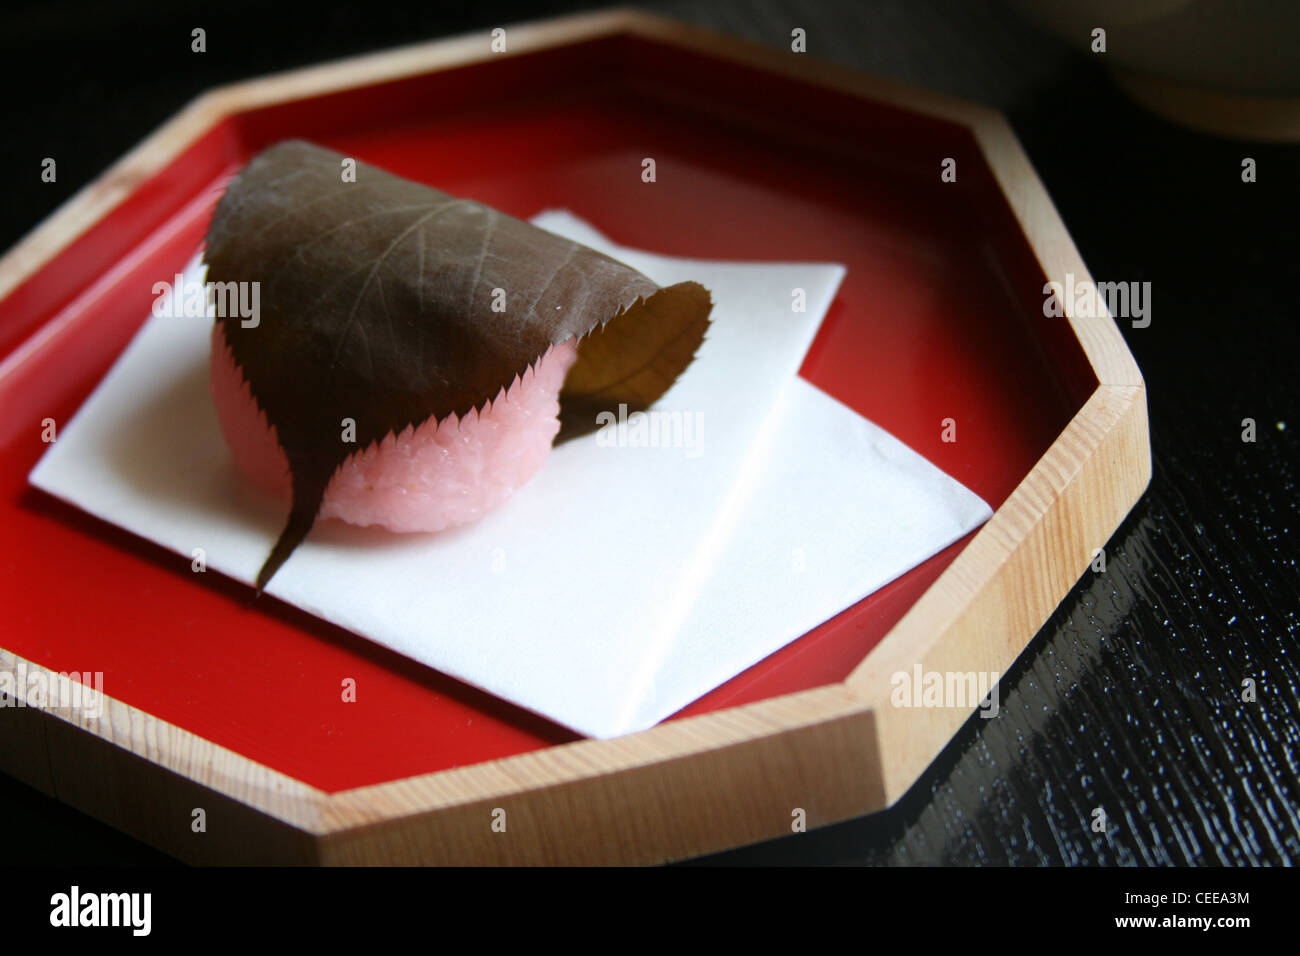 Bonbons authentique japonais traditionnel gâteau de riz mochi rose Sakura cherry blossom quitte la pâte de haricots rouges au thé vert macha shoji Banque D'Images